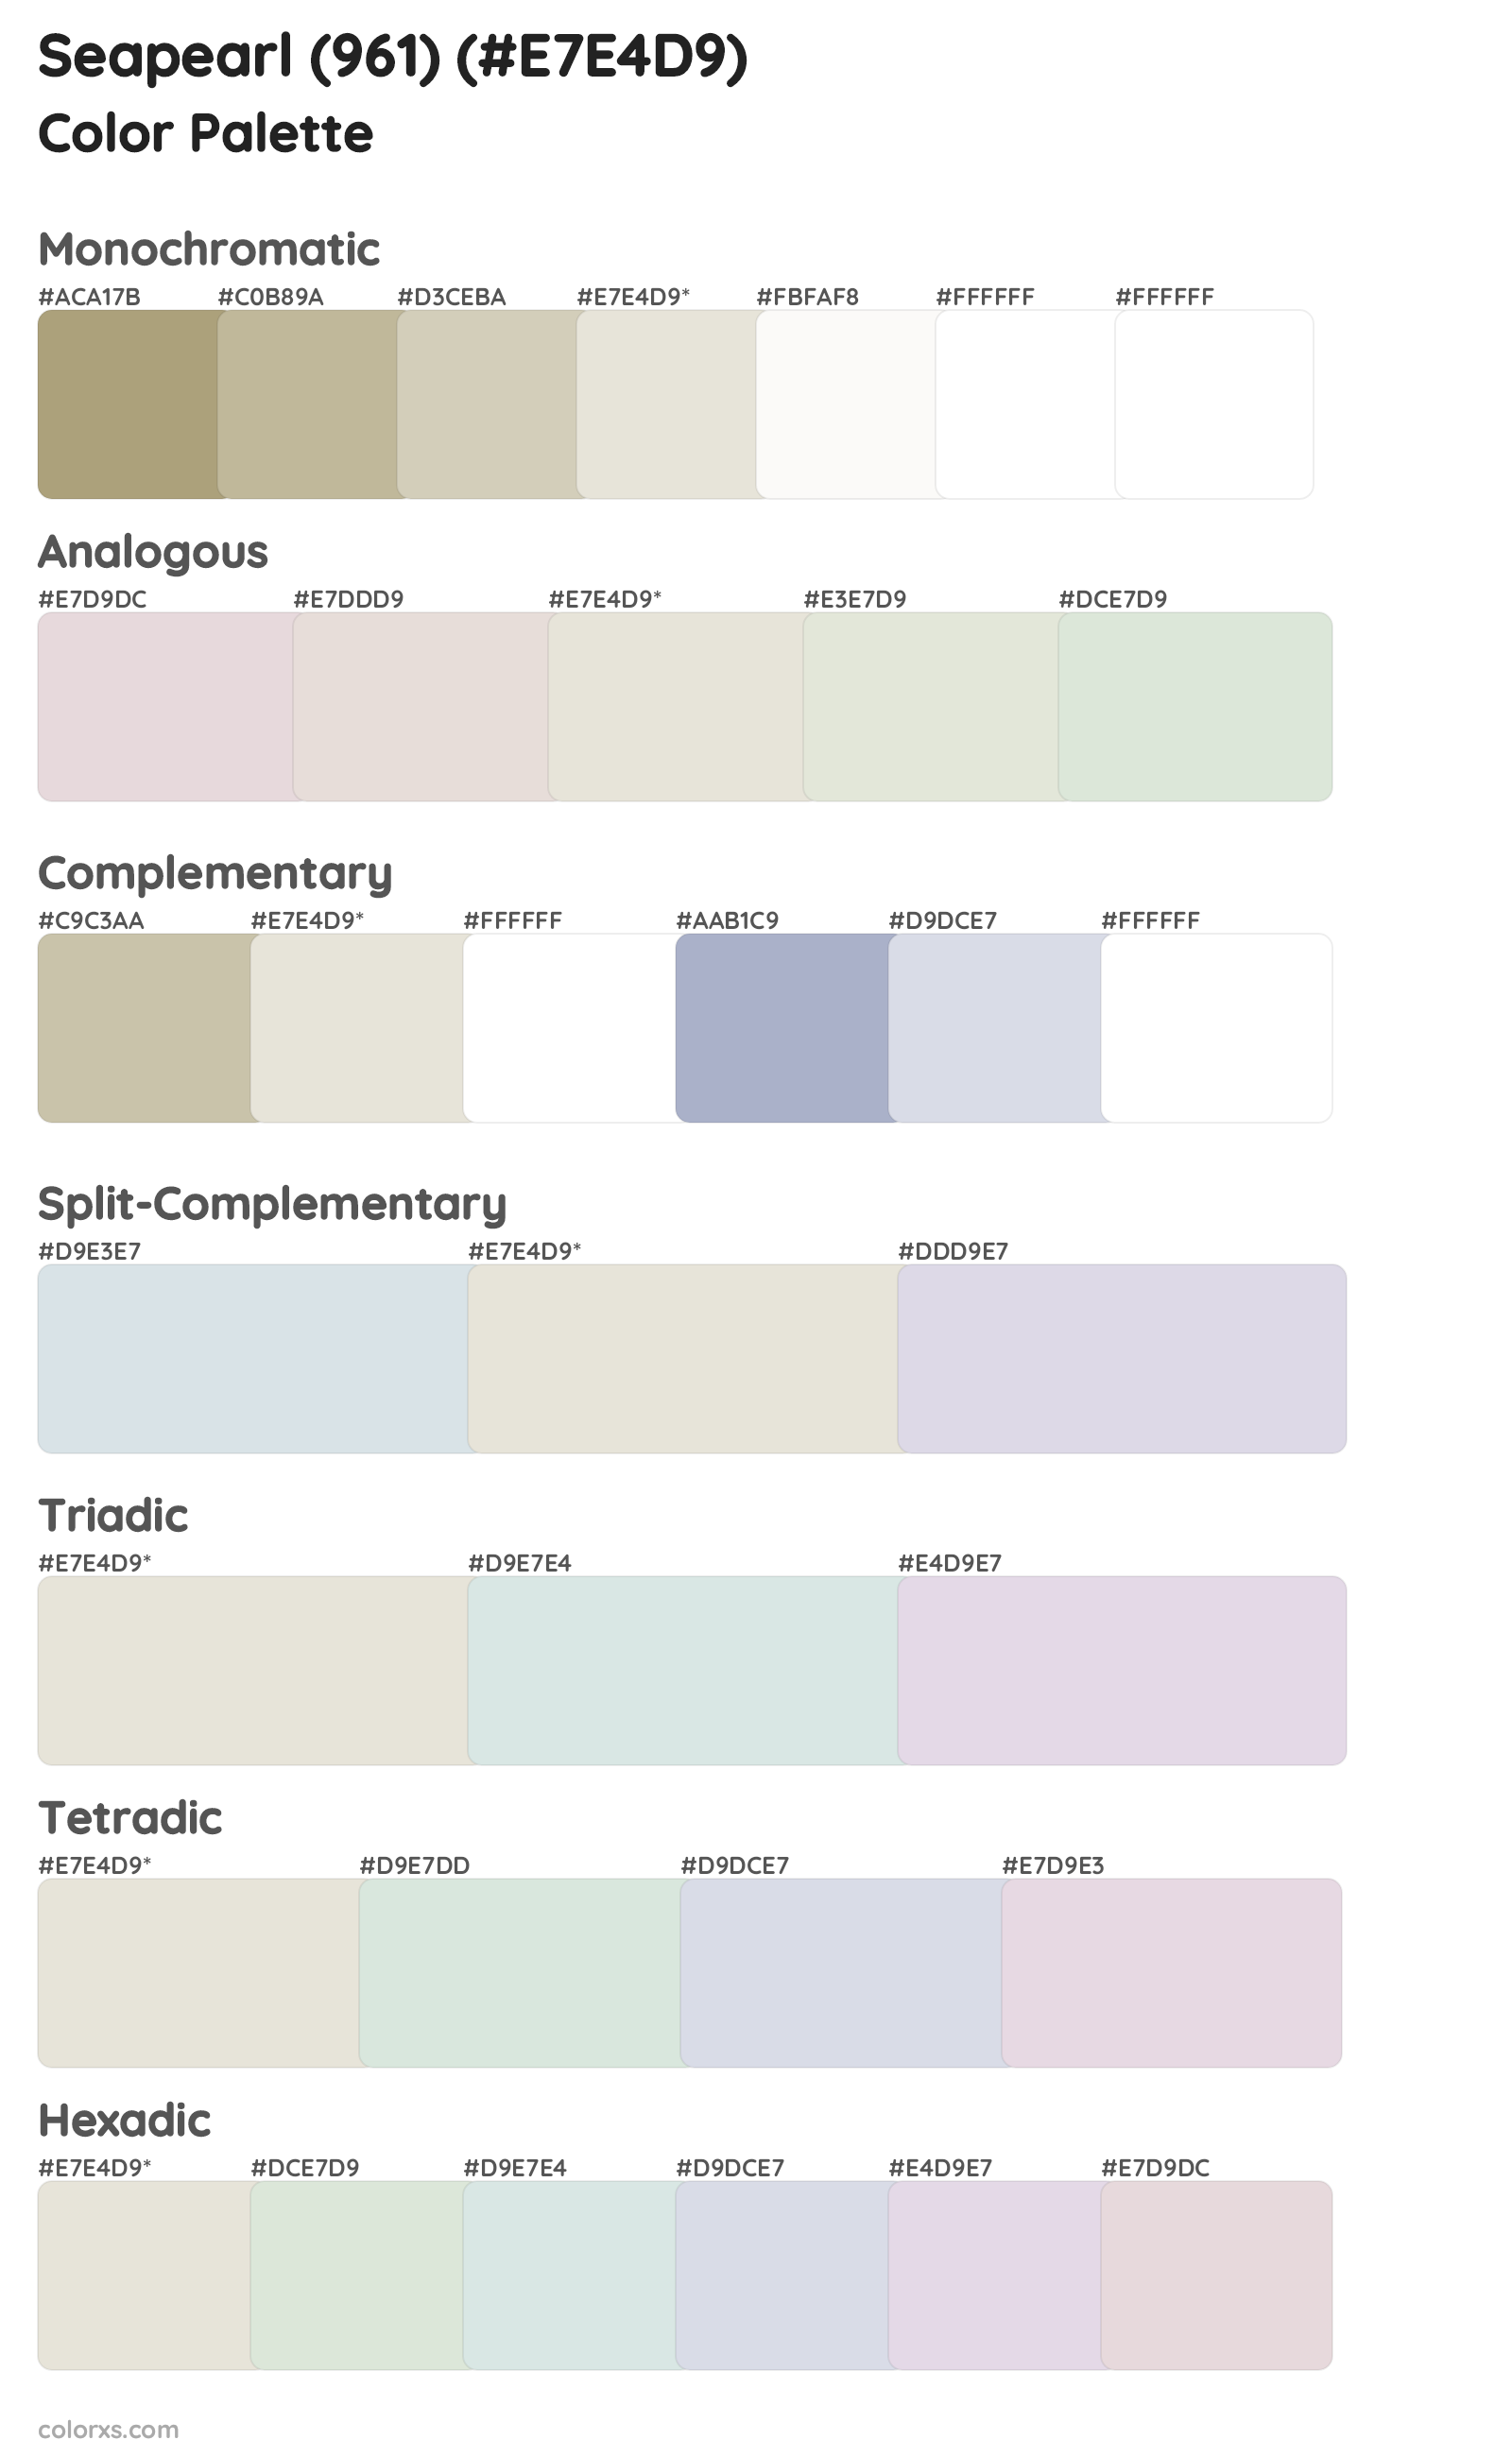 Seapearl (961) Color Scheme Palettes